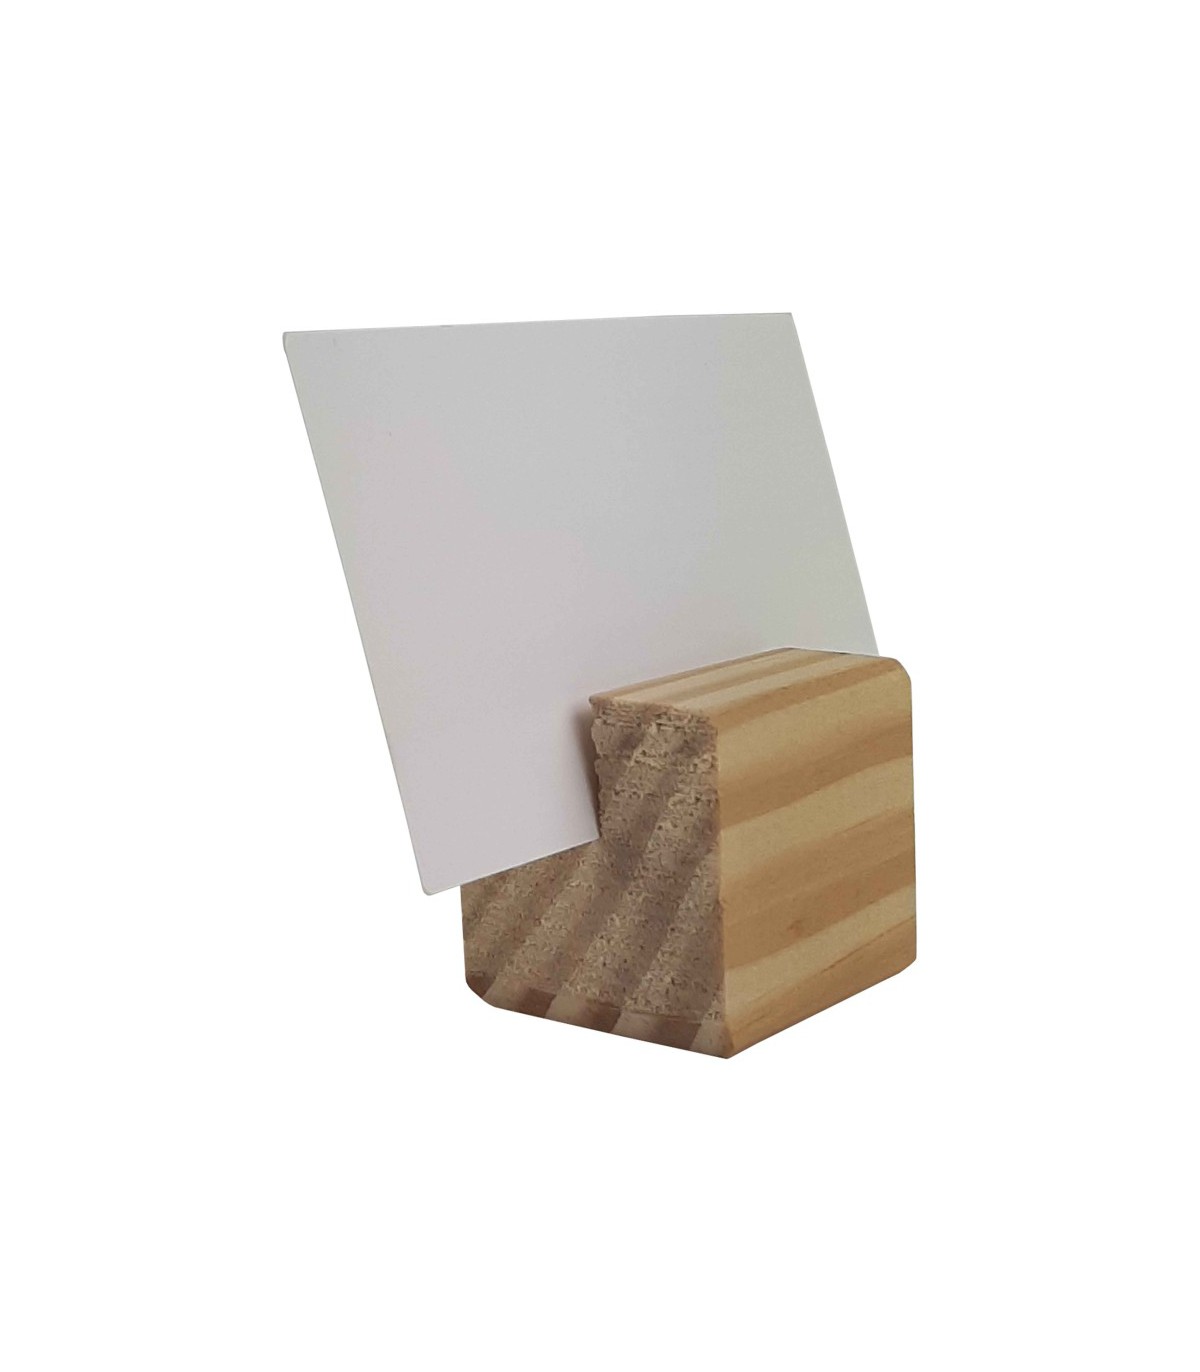 Socle cube en bois brut 3,6x3,6x3,6cm avec rainure inclinée - Lot de 10  Résultats page pour